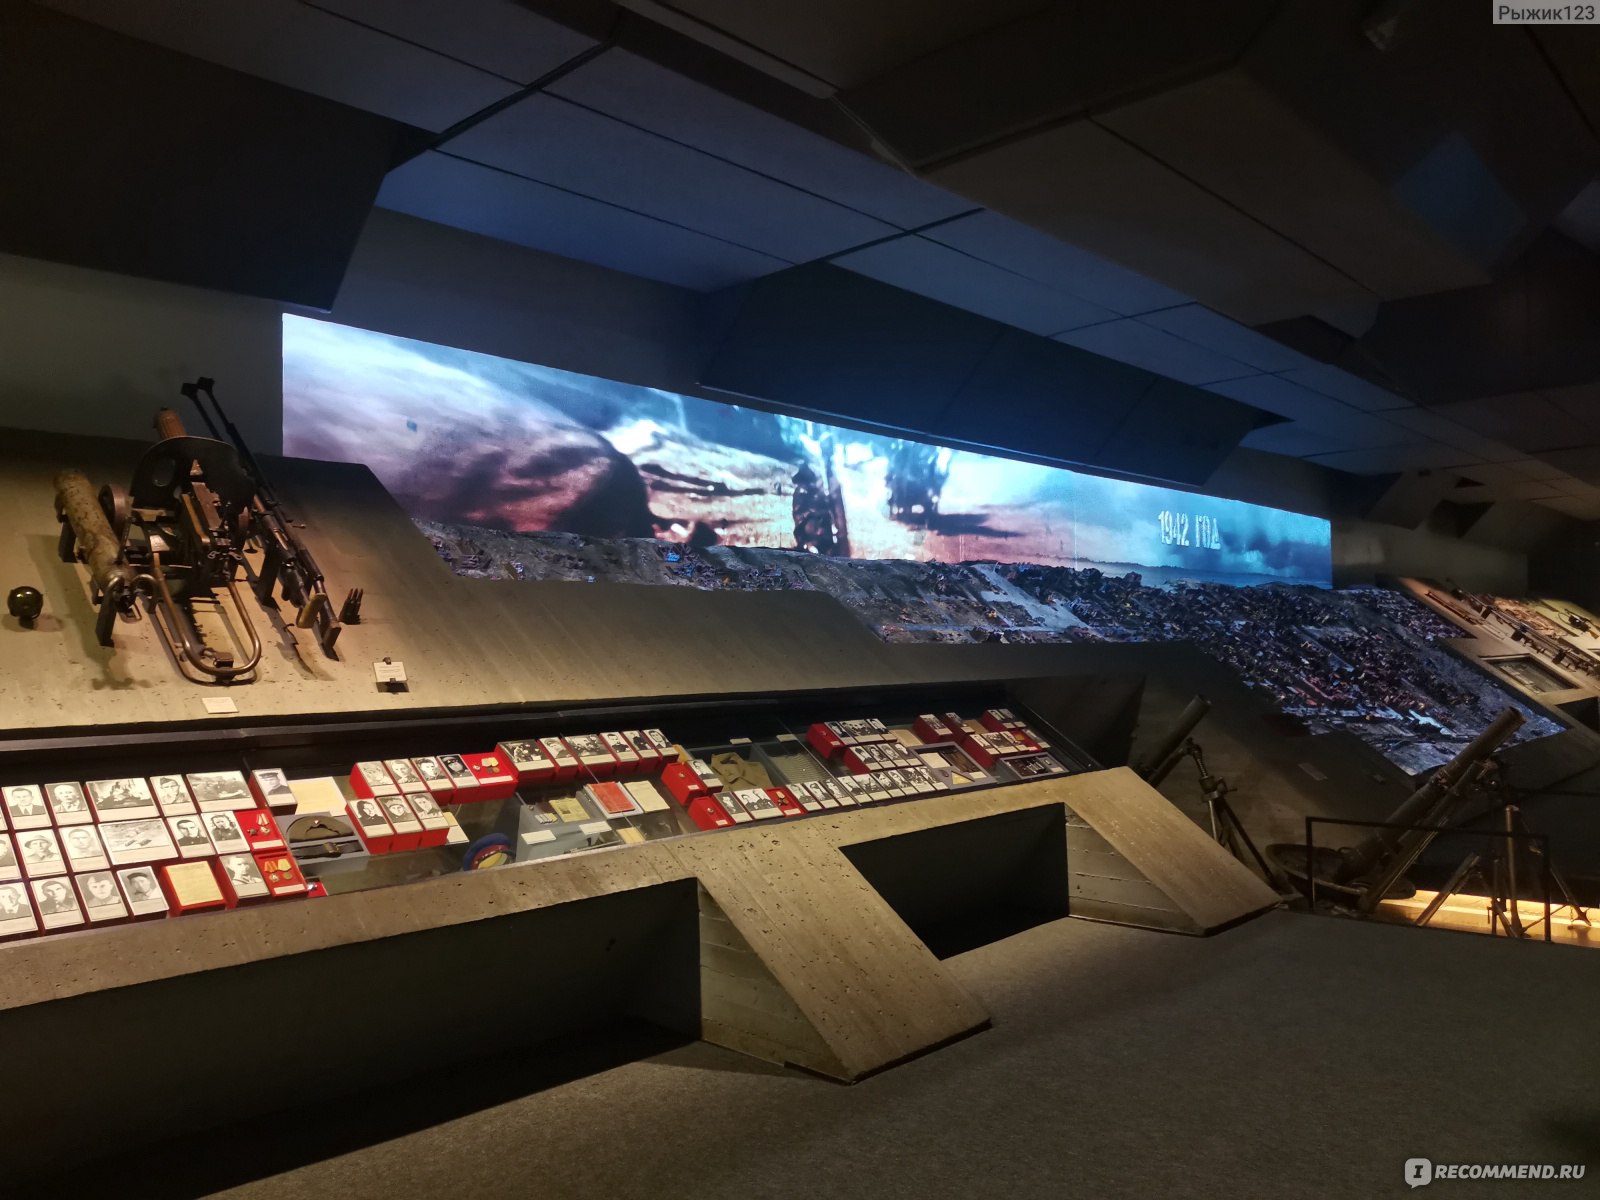 музей панорама сталинградская битва внутри